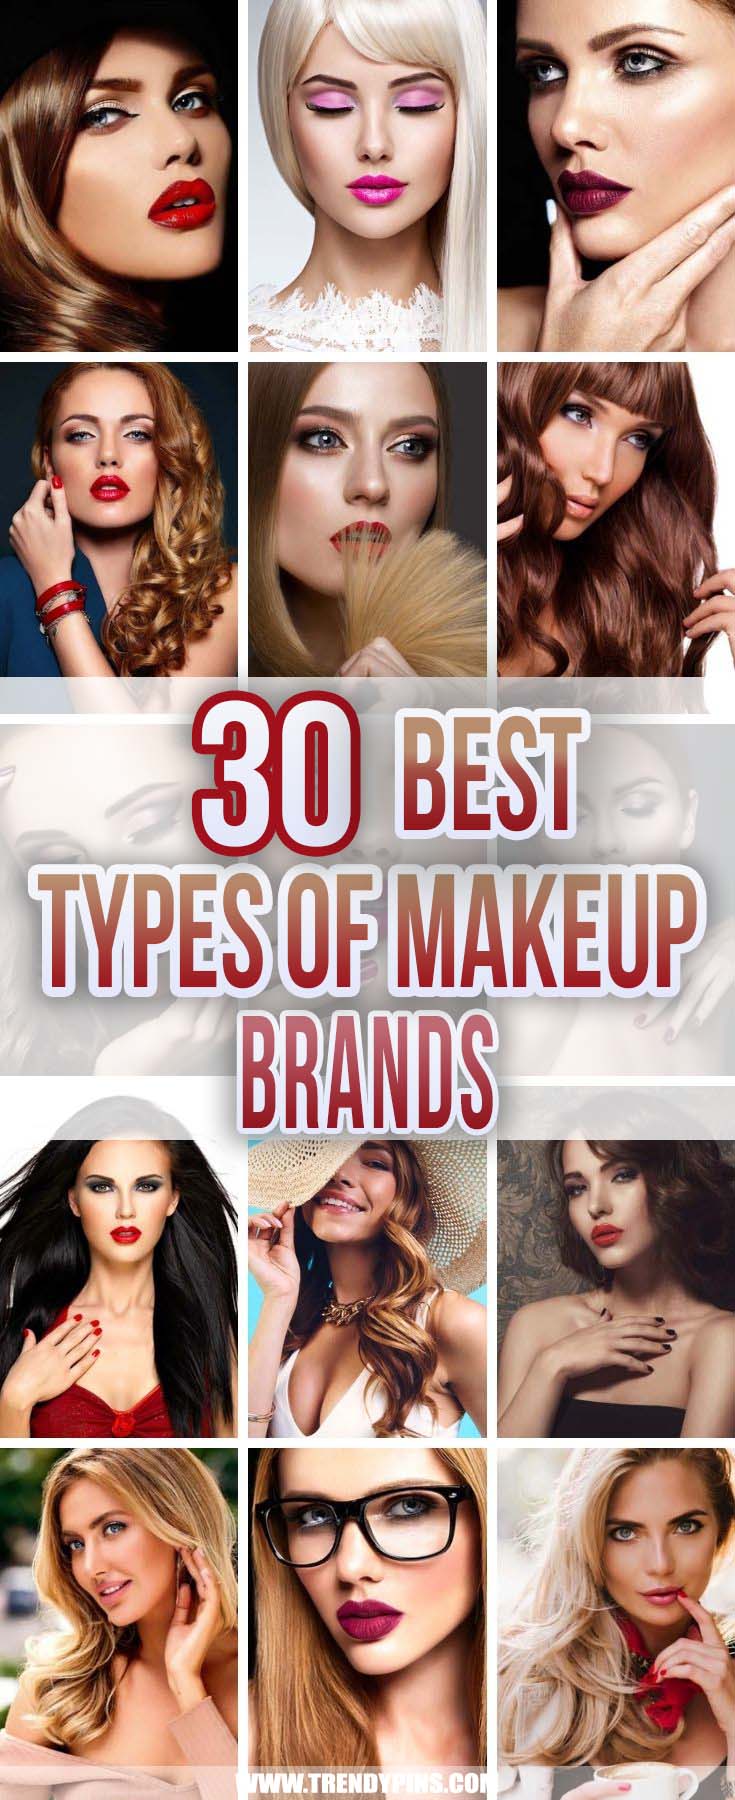 30 Best Types of Makeup Brands #makeupbrands #beauty #trendypins